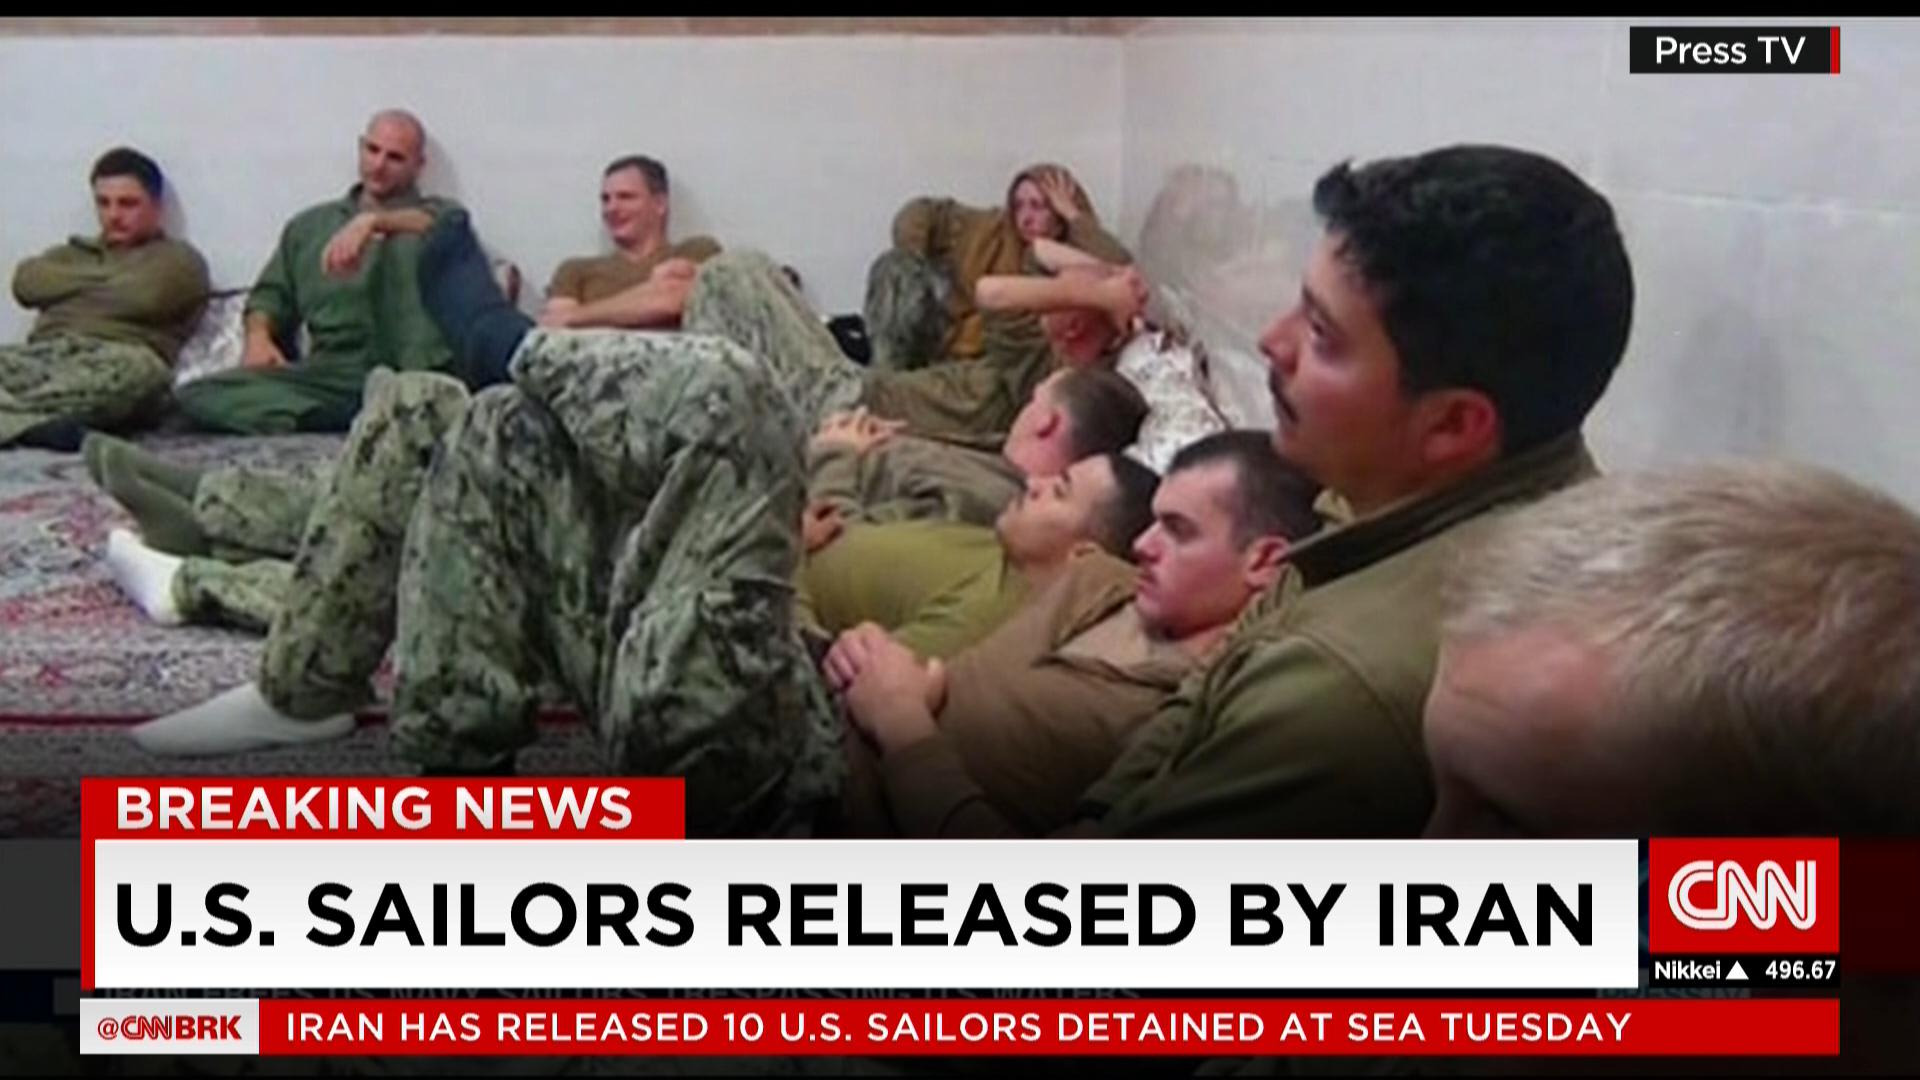 مسؤول أمريكي لـCNN: بحارتنا وصلوا بسلام إلى سفينة أمريكية بعد إفراج إيران عنهم